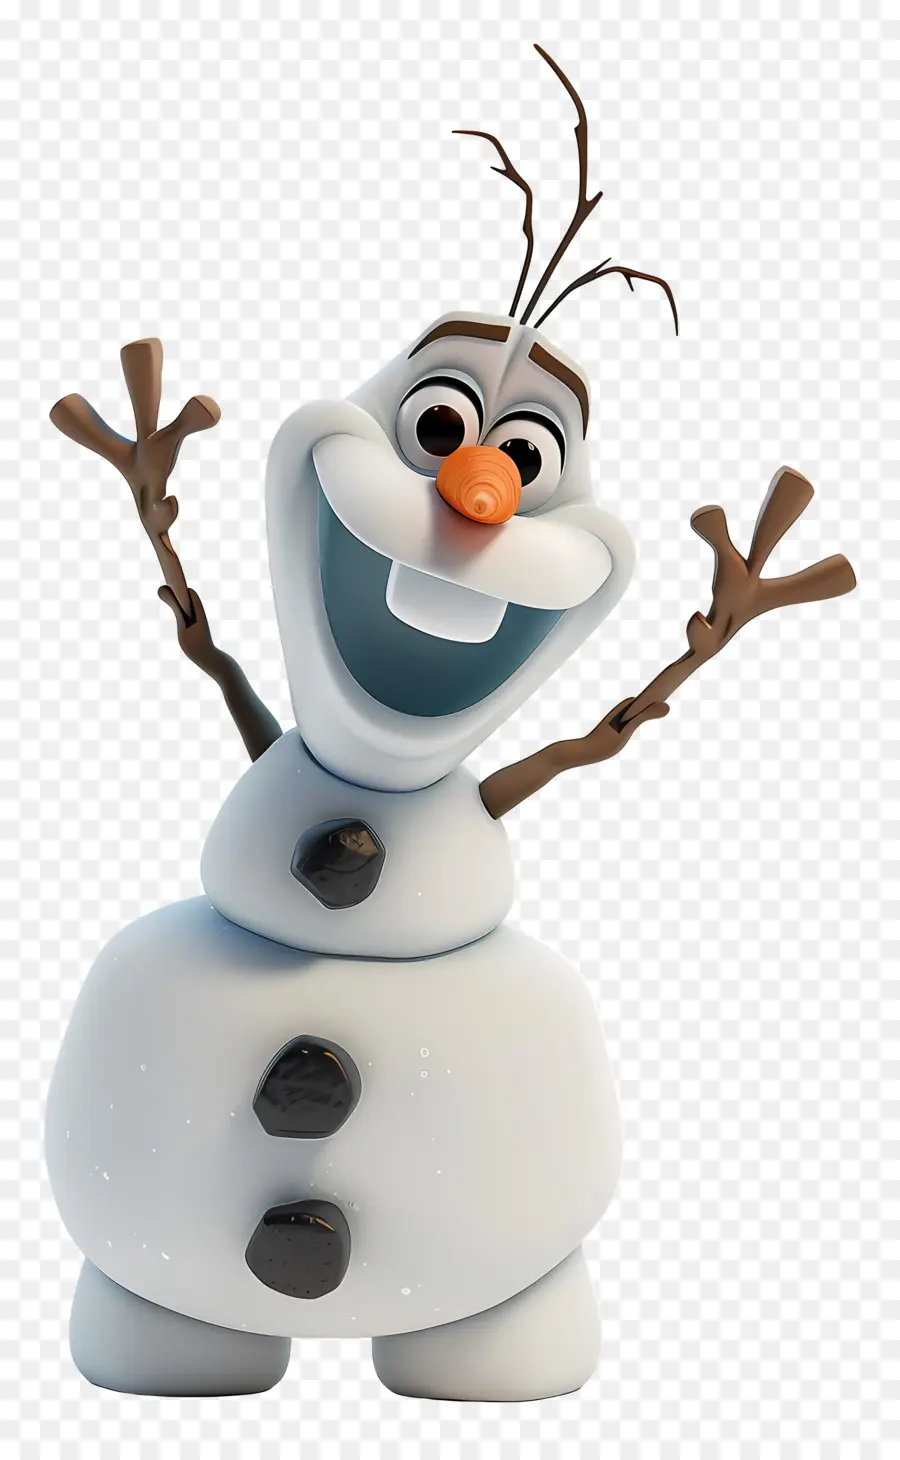 Frozen OLAF - Cartooncharakter mit weißem Haar und Schneeflockenhut